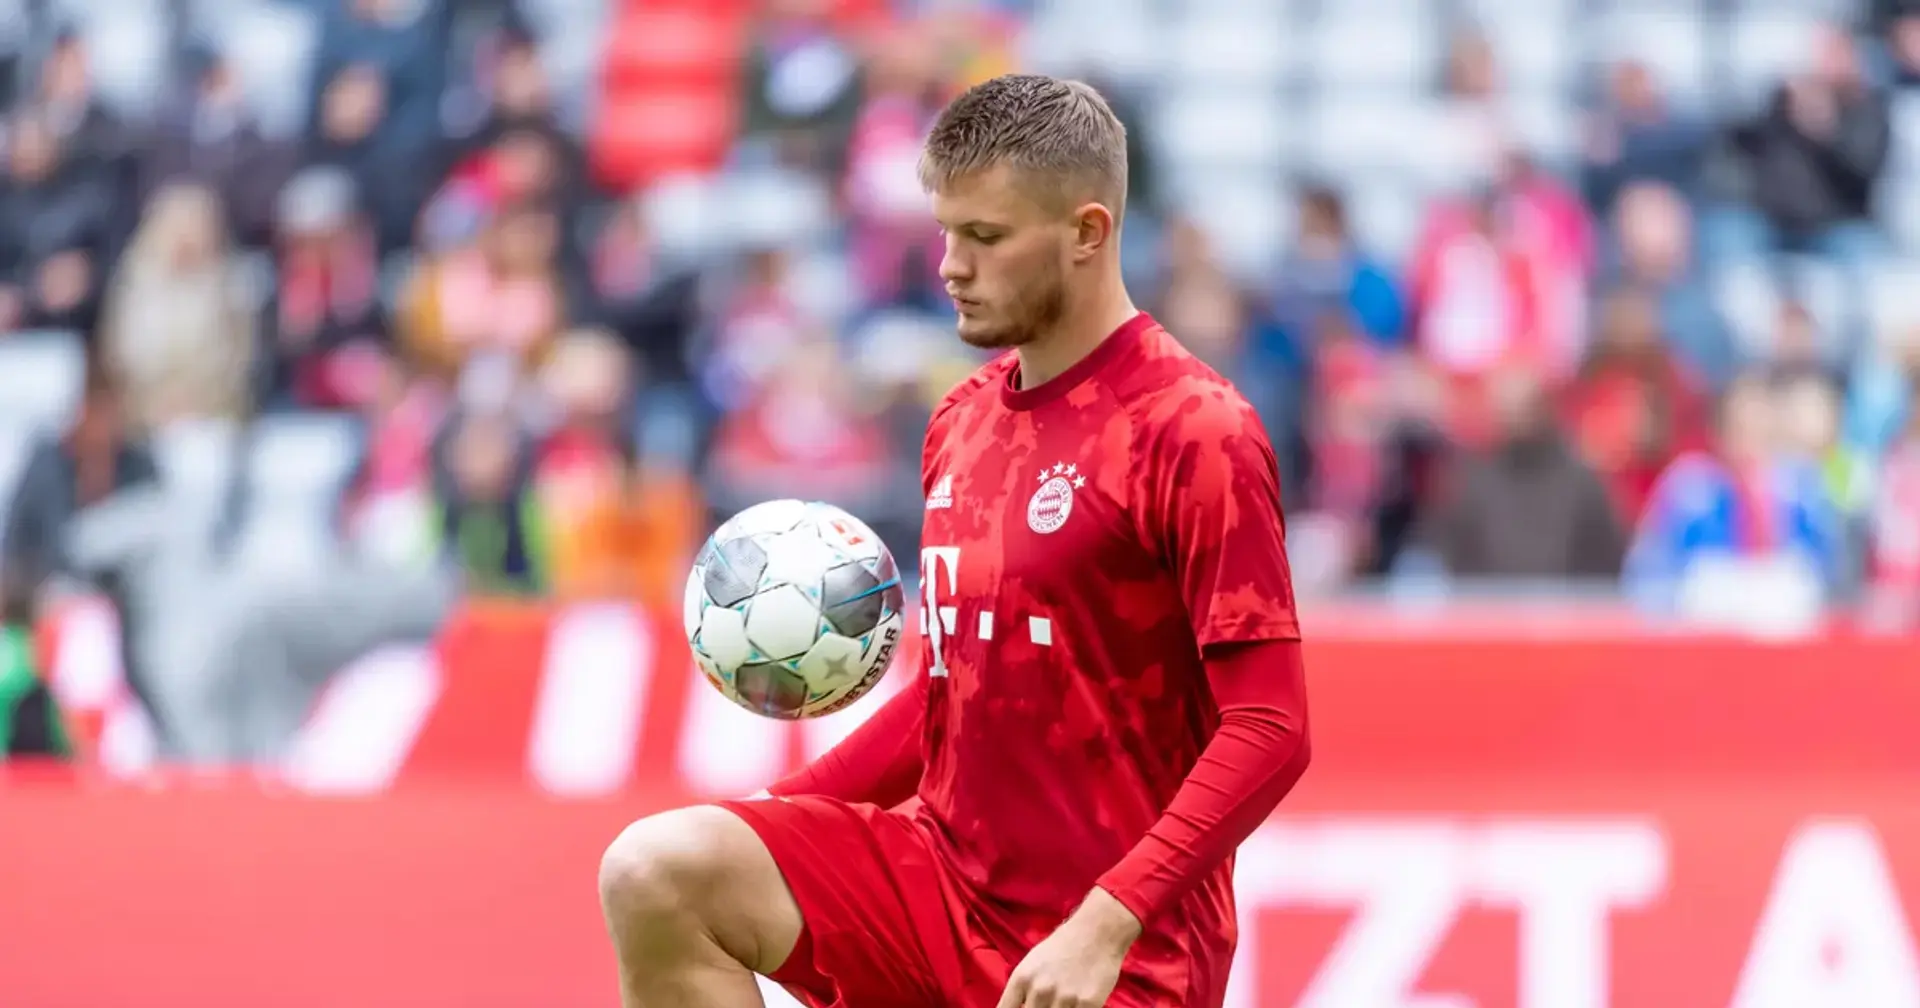 OFFIZIELL: Lars Lukas Mai verlängert bei Bayern und wird an Darmstadt verliehen